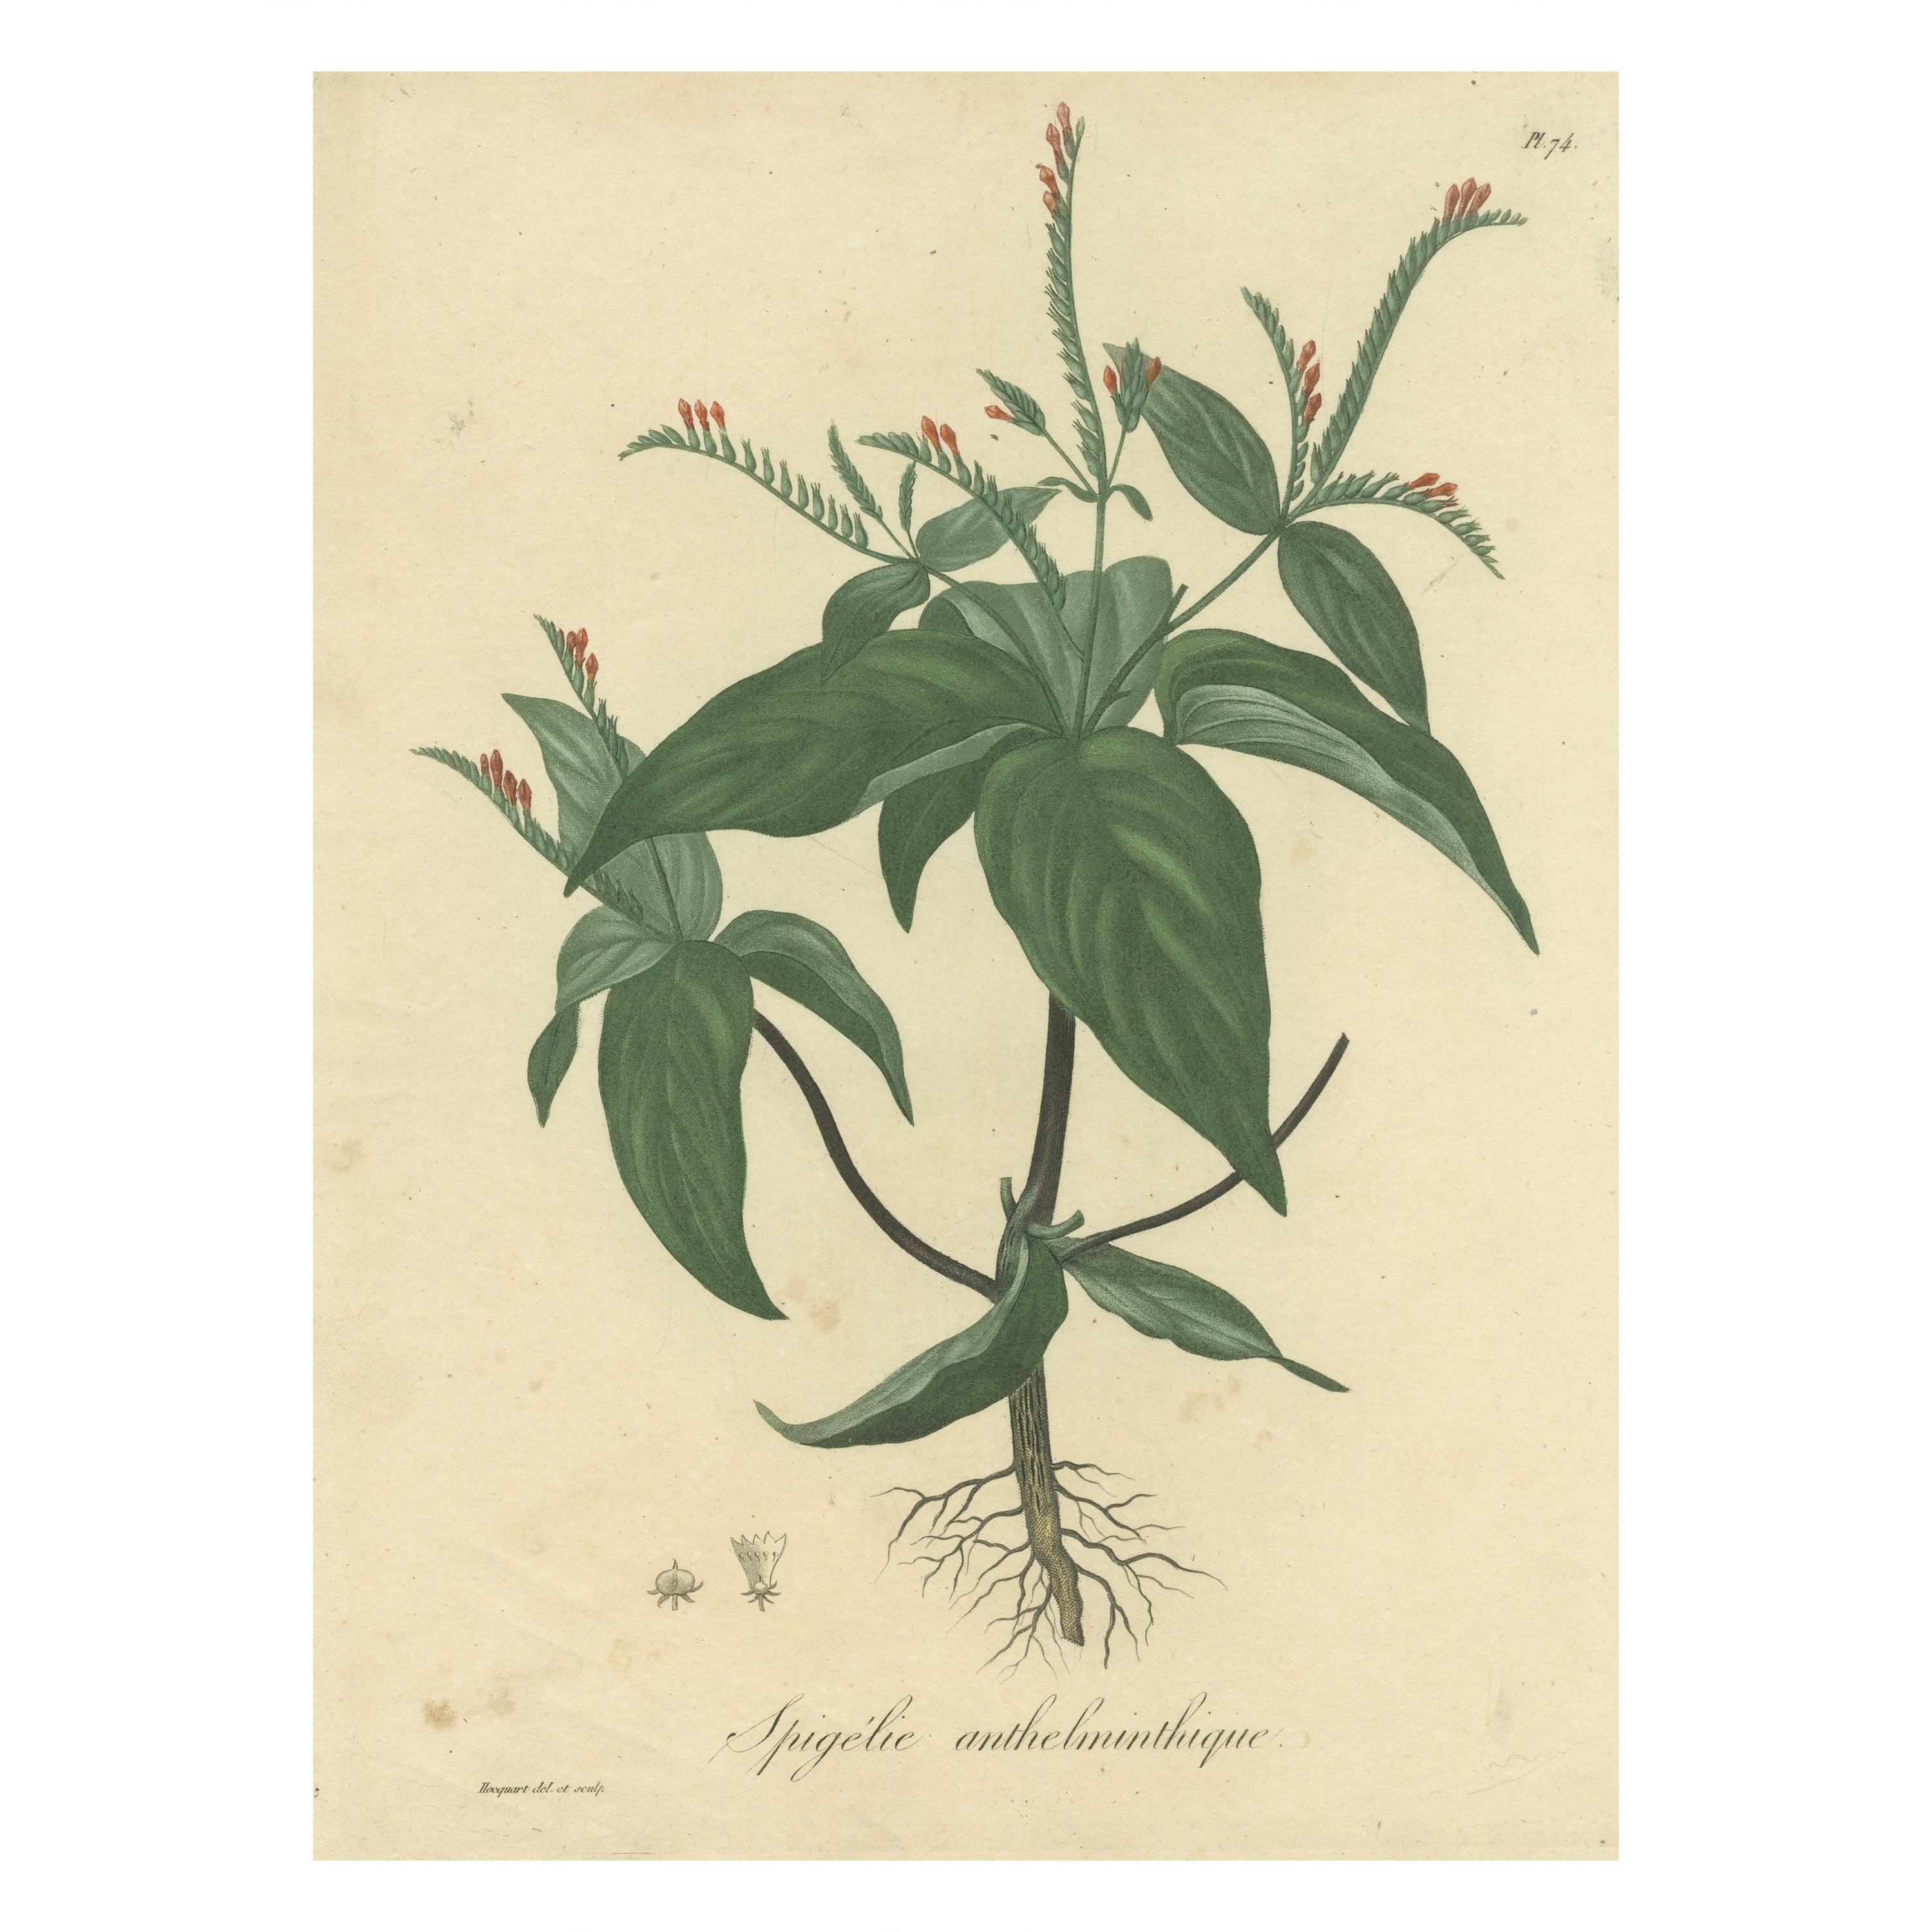 Floral Elegance of the Americas: A Botanical Print of a Spigelia Species, um 1821